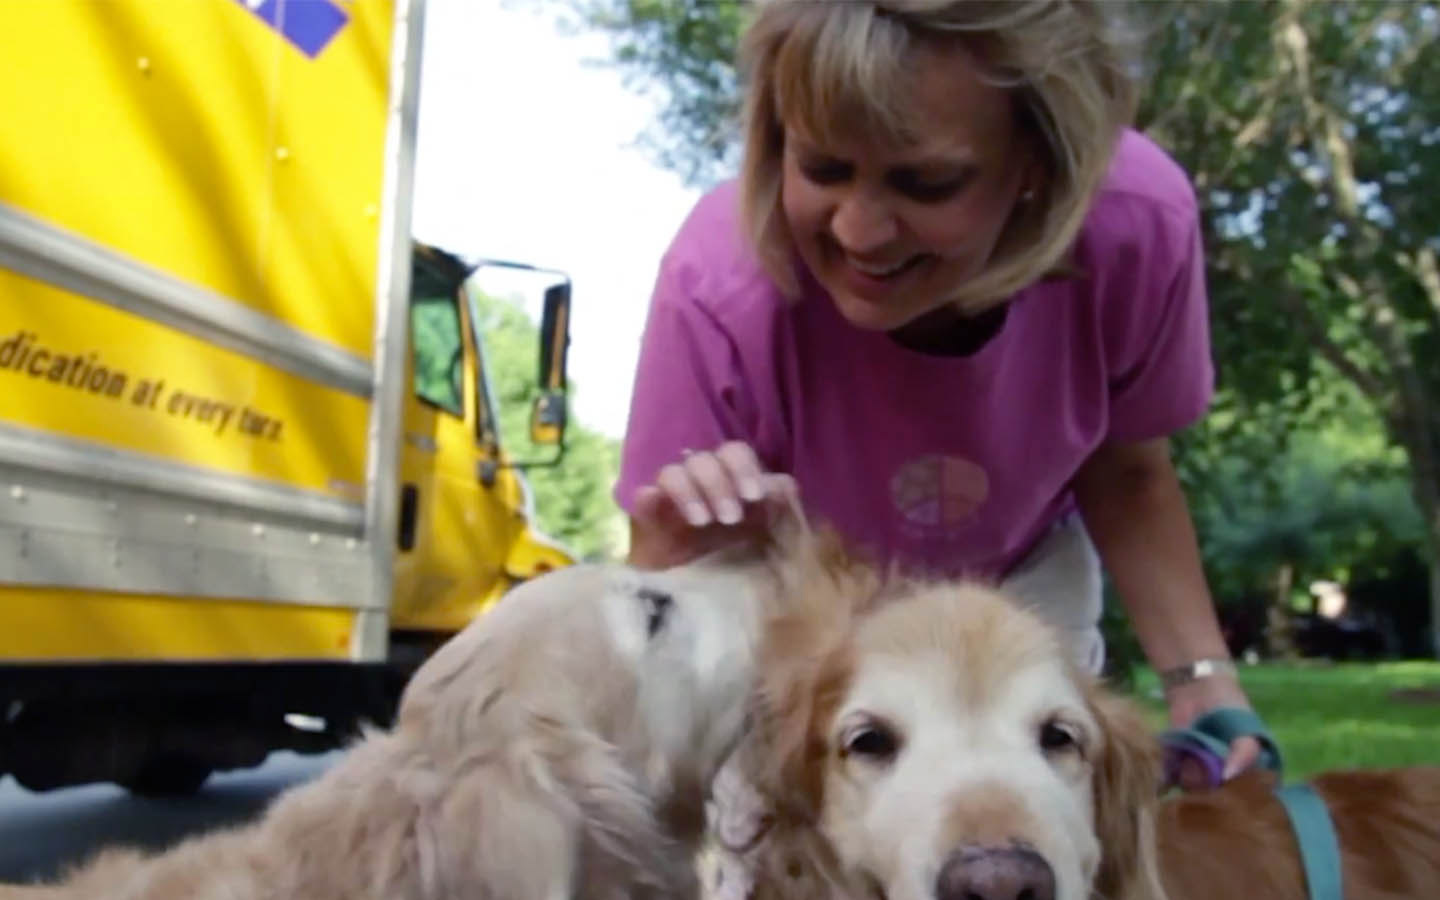 Deb, porteuse d’implant, caresse ses chiens pendant leur promenade